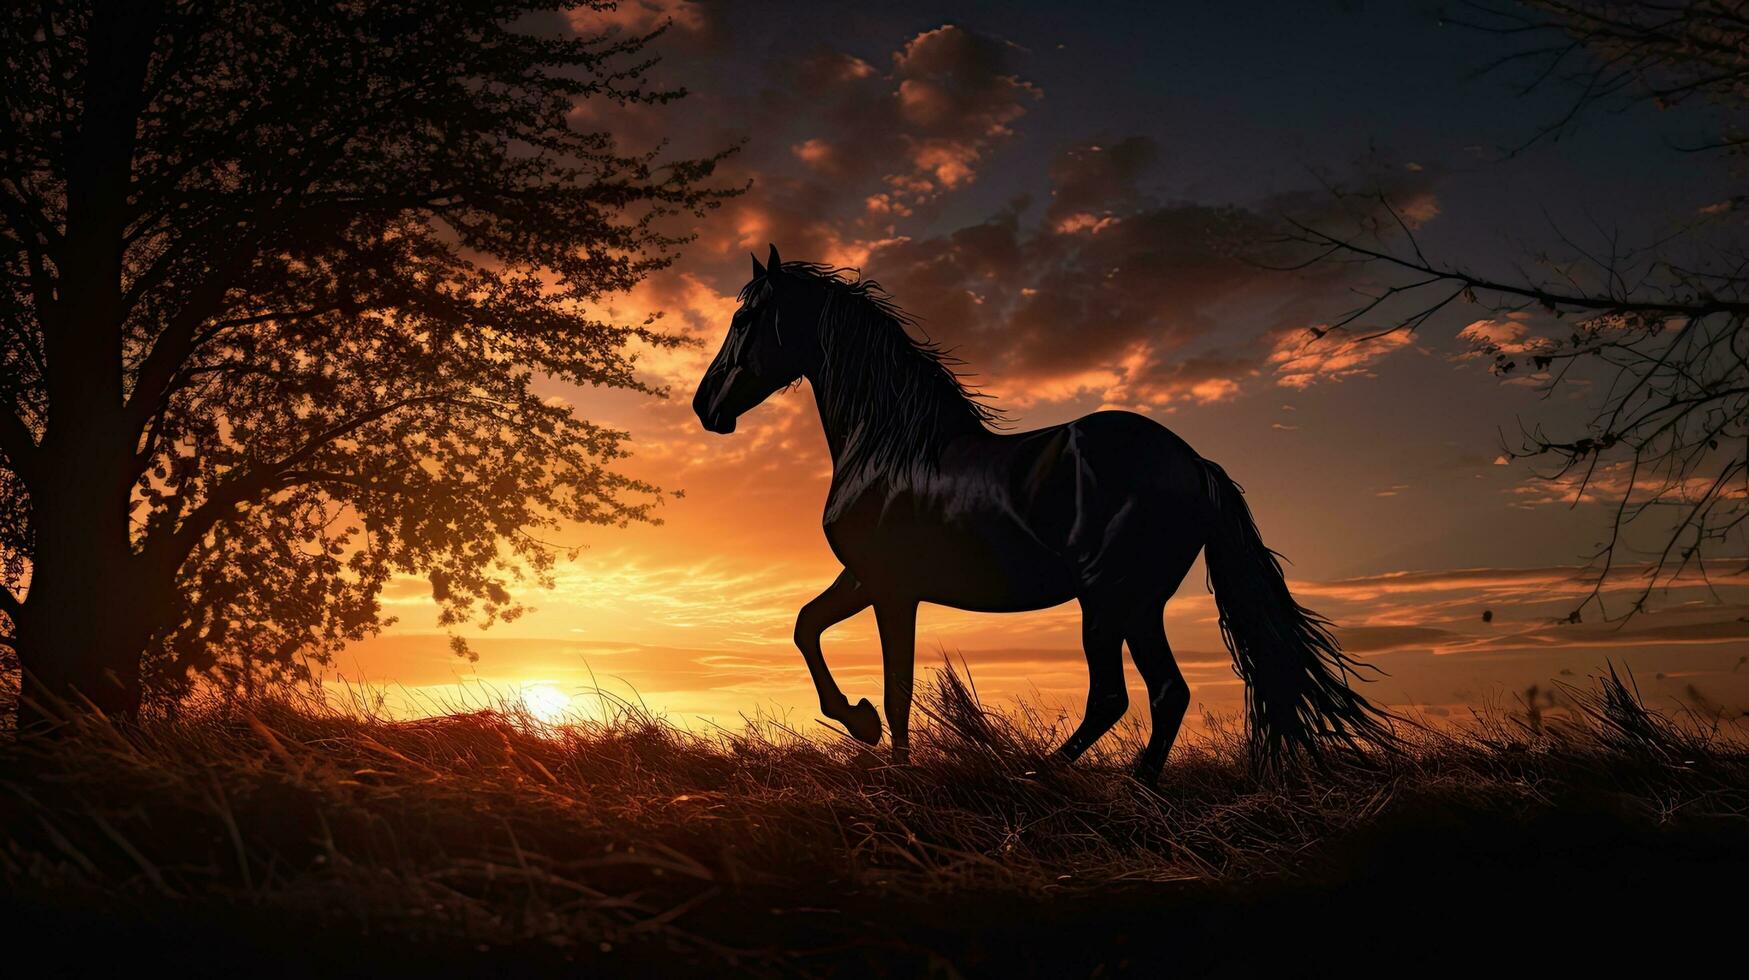 amanecer silueta de un caballo foto